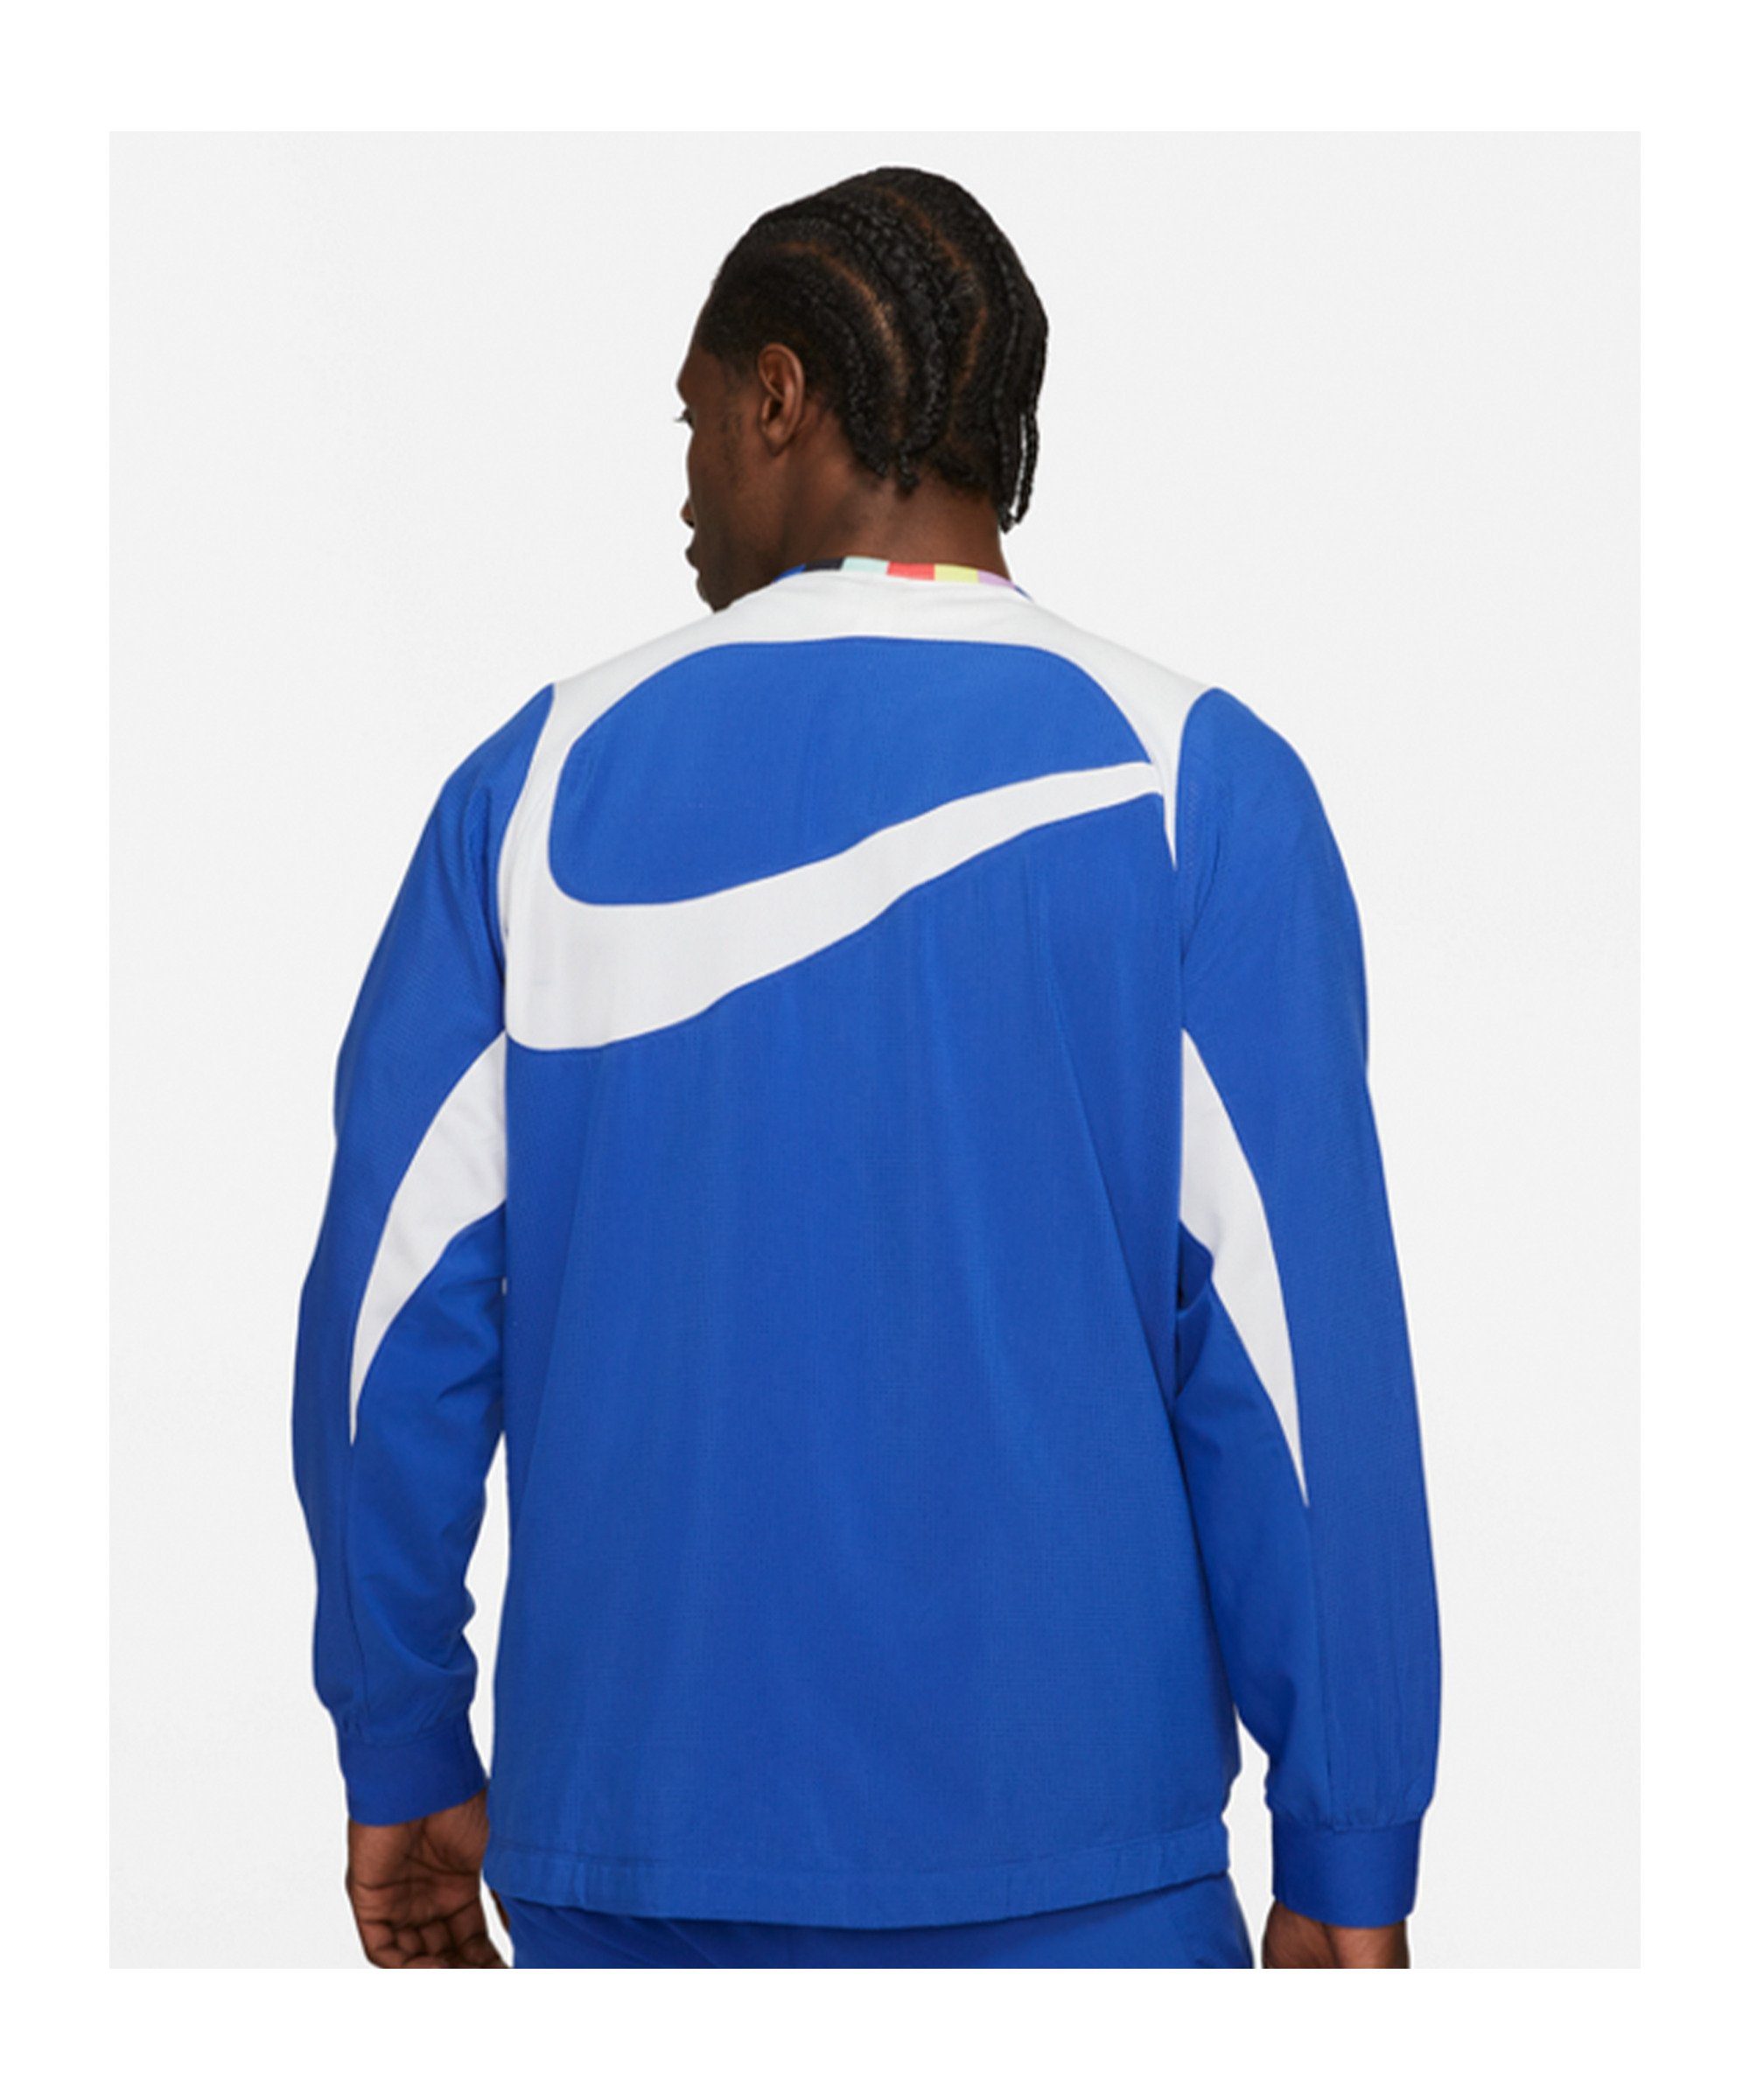 F.C. Sweatjacke Bonito blauweiss Jacke Sportswear Nike Woven Joga